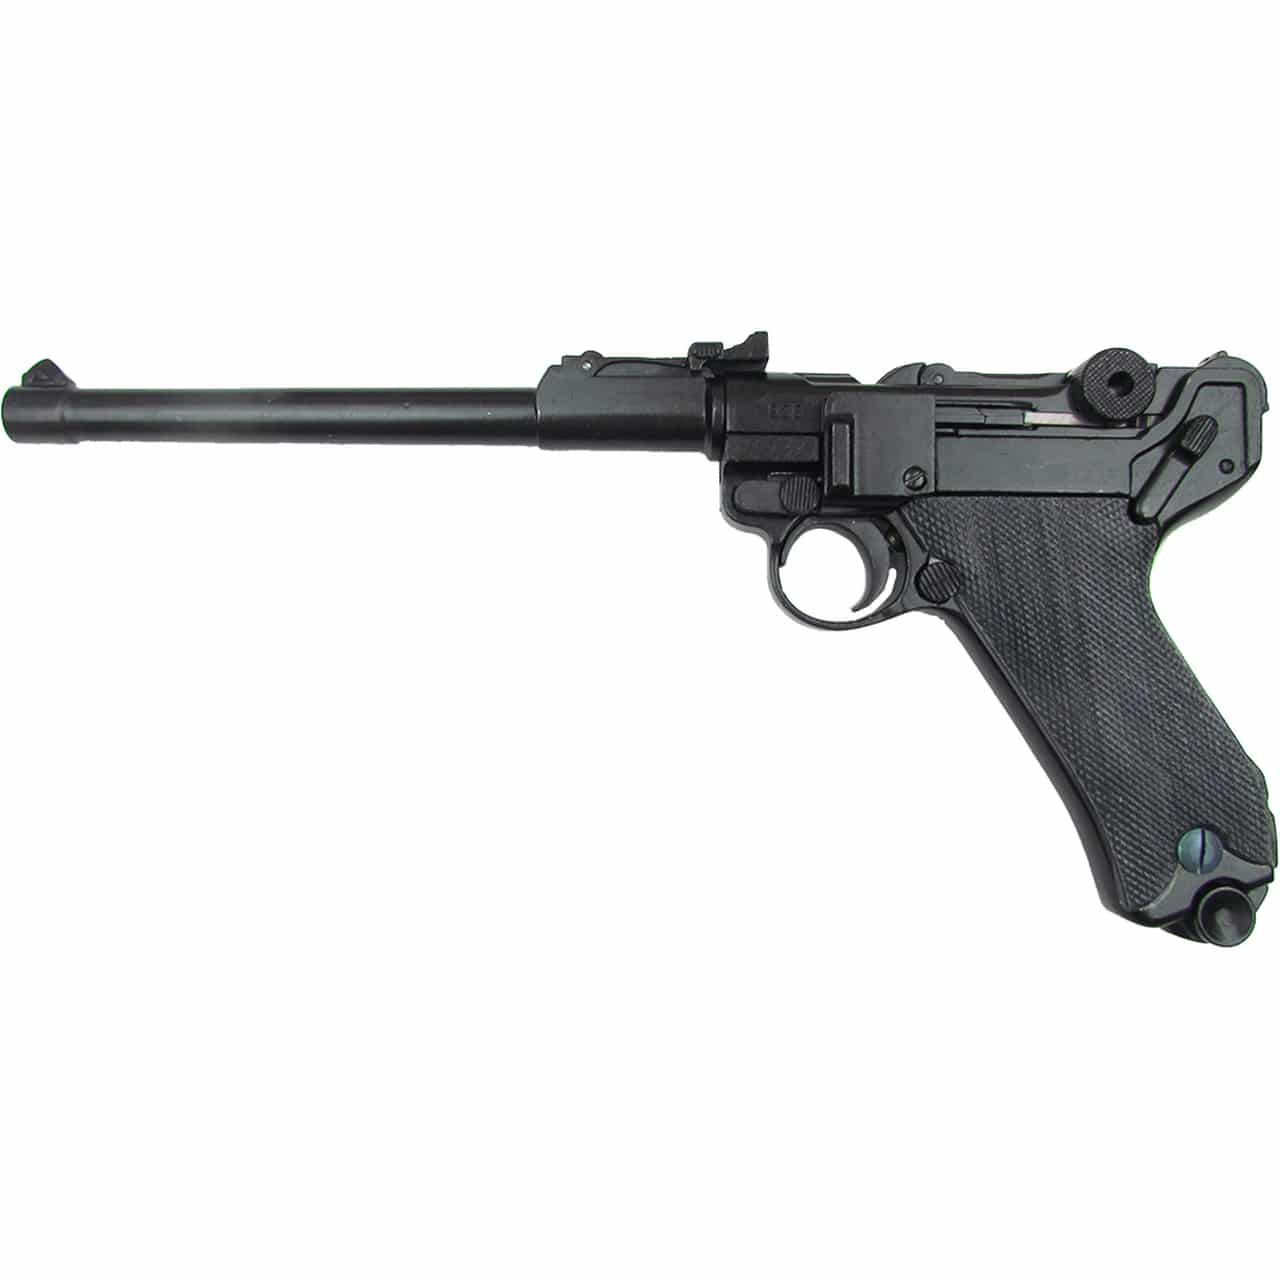 Black German Luger Lange Pistol left side view